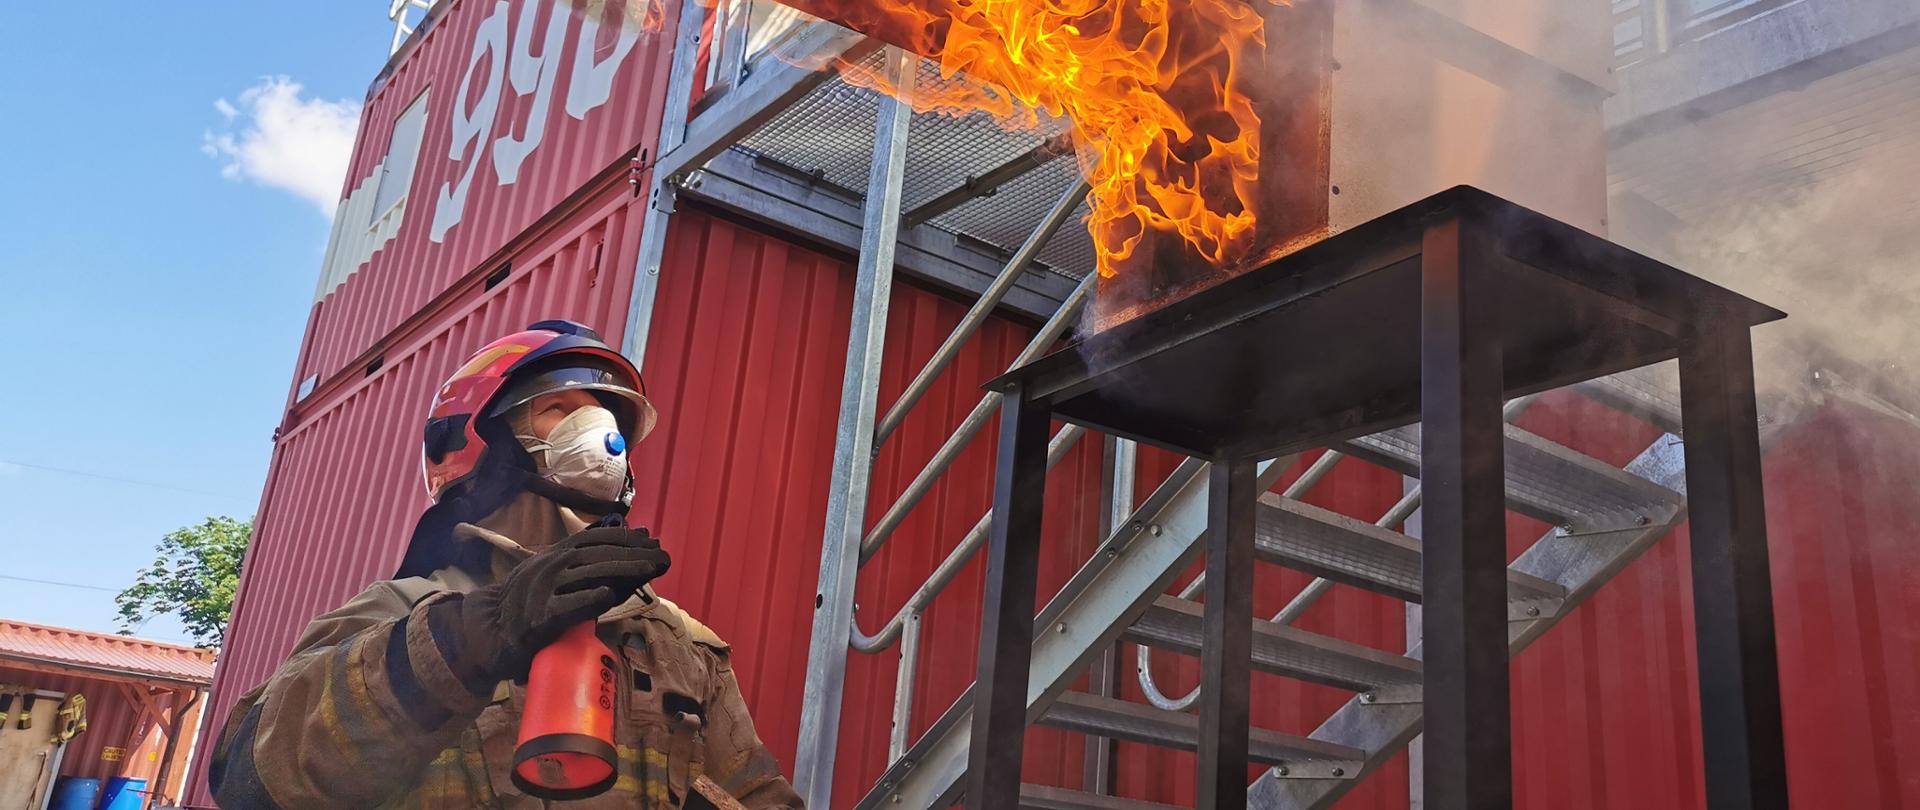 strażak w umundurowaniu specjalnym w hełmie i maseczce na twarxy niosący deskę , nad nim płomienie a w tle trenażer